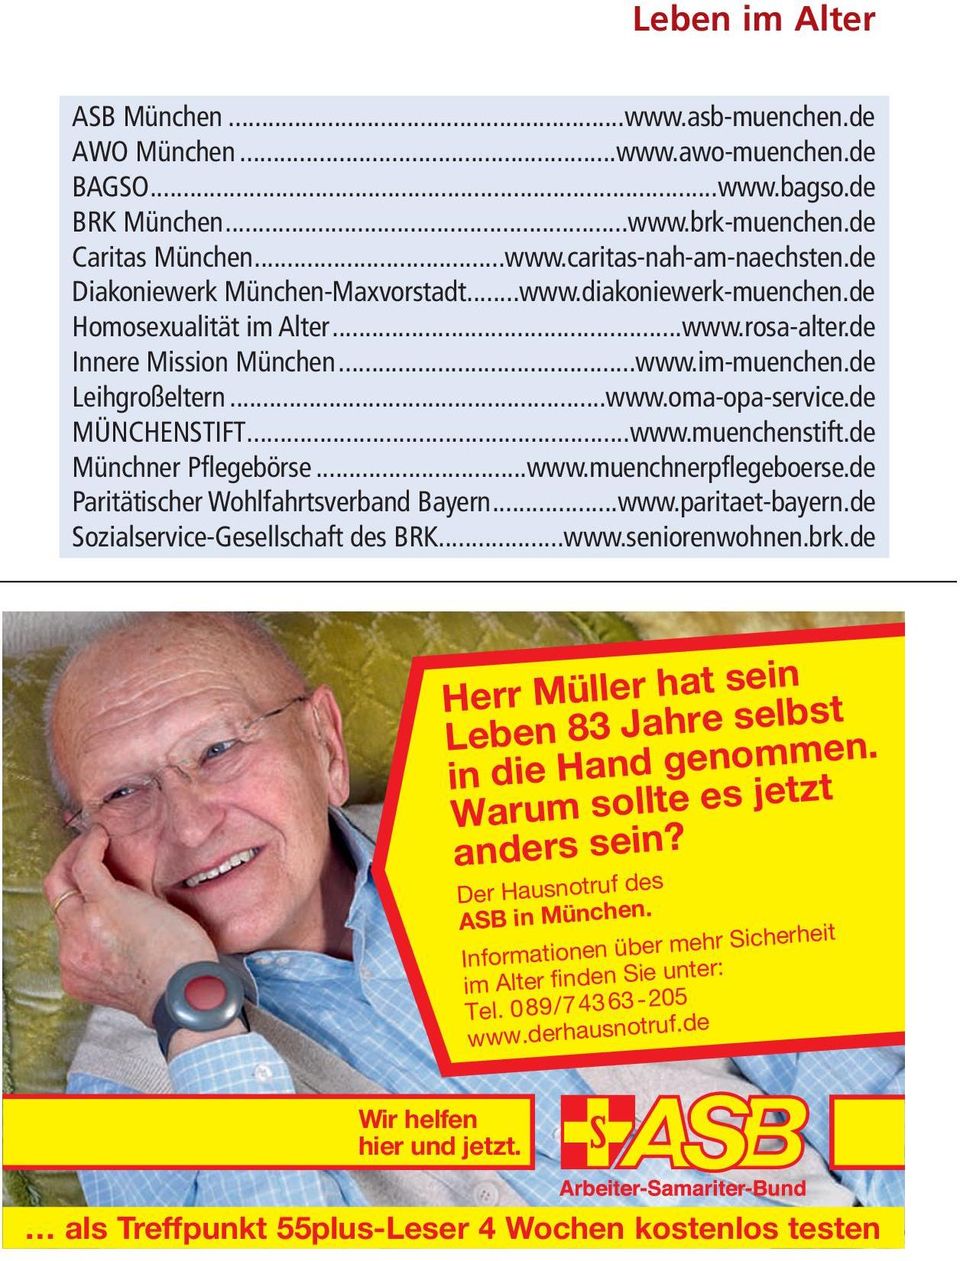 de MÜNCHENSTIFT...www.muenchenstift.de Münchner Pflegebörse...www.muenchnerpflegeboerse.de Paritätischer Wohlfahrtsverband Bayern...www.paritaet-bayern.de Sozialservice-Gesellschaft des BRK...www.seniorenwohnen.